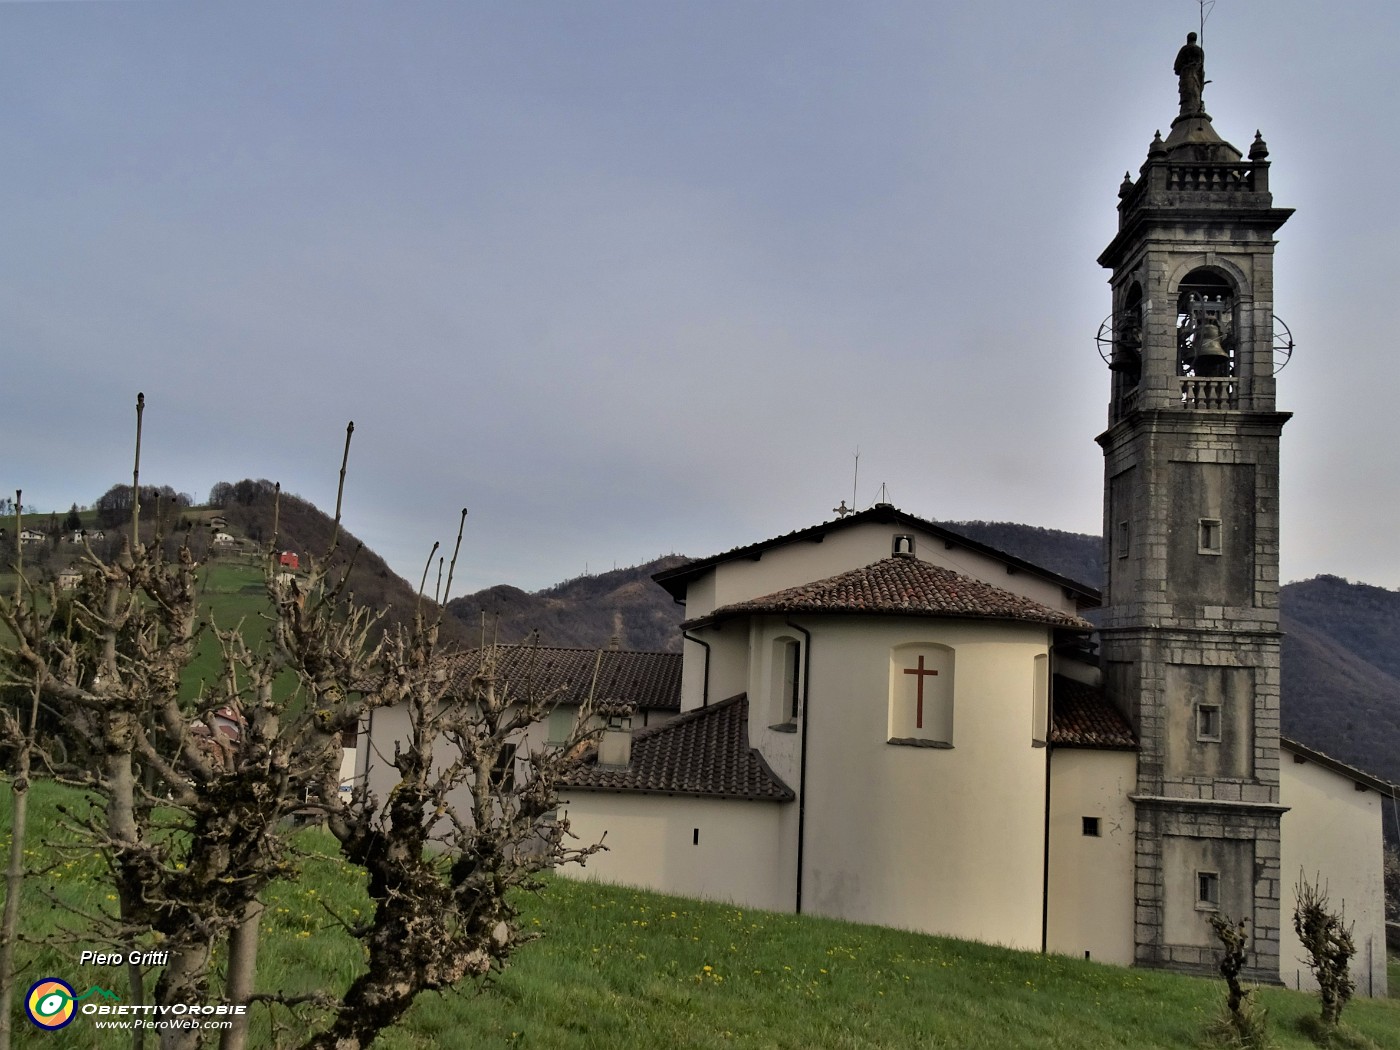 71 Chiesa di Miragolo vista dalla salita al cimitero.JPG